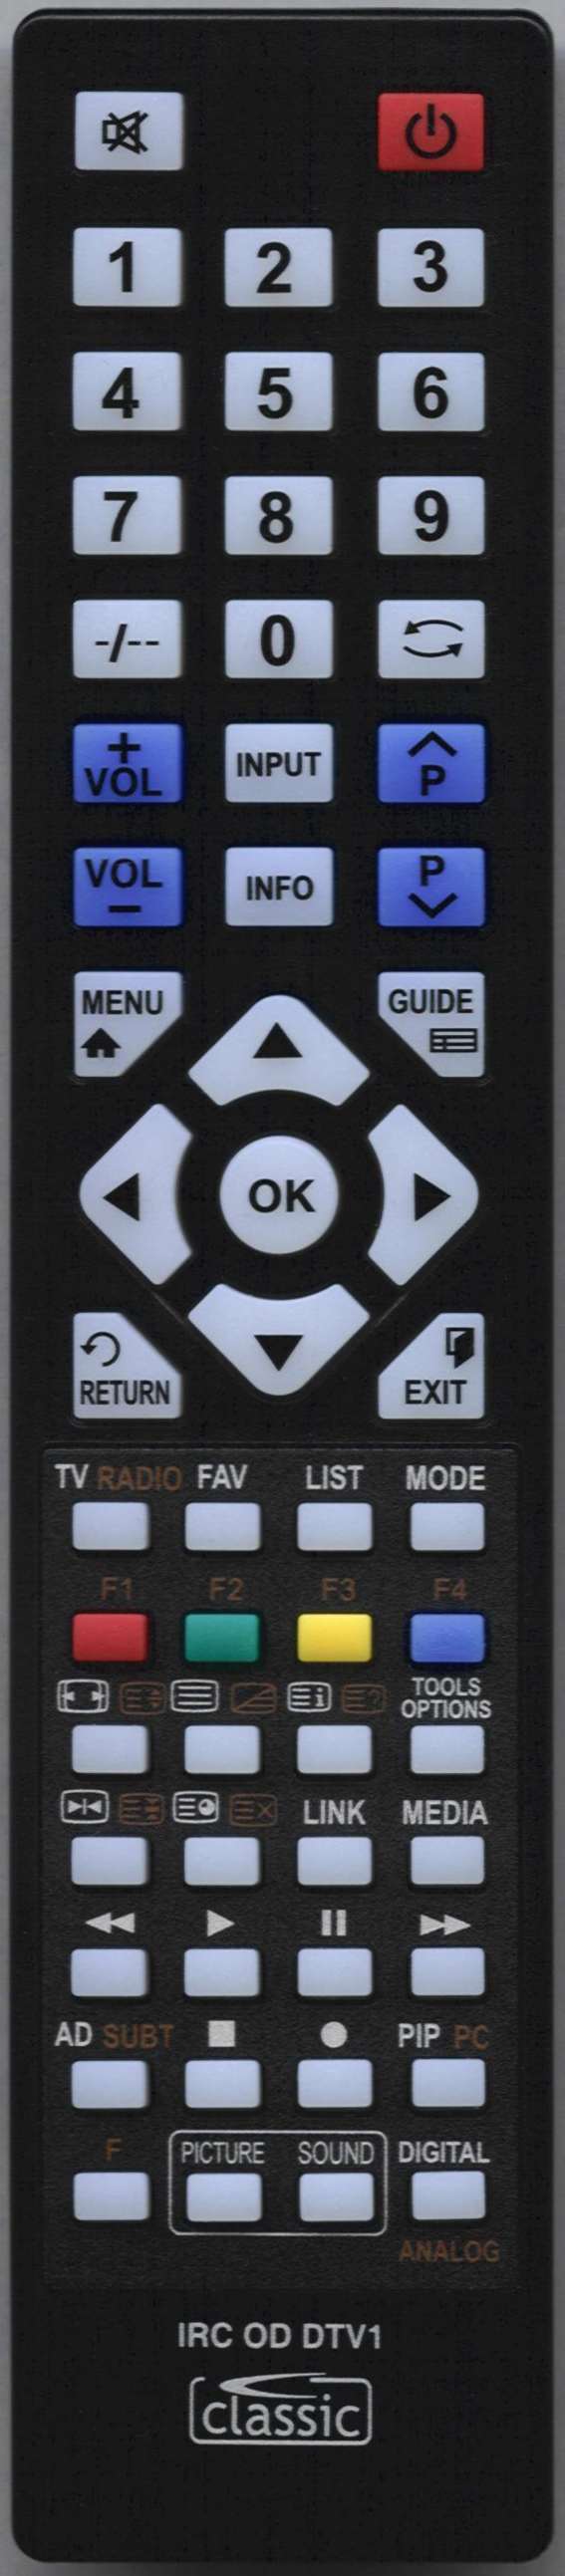 Cello RCC004-03 Remote Control